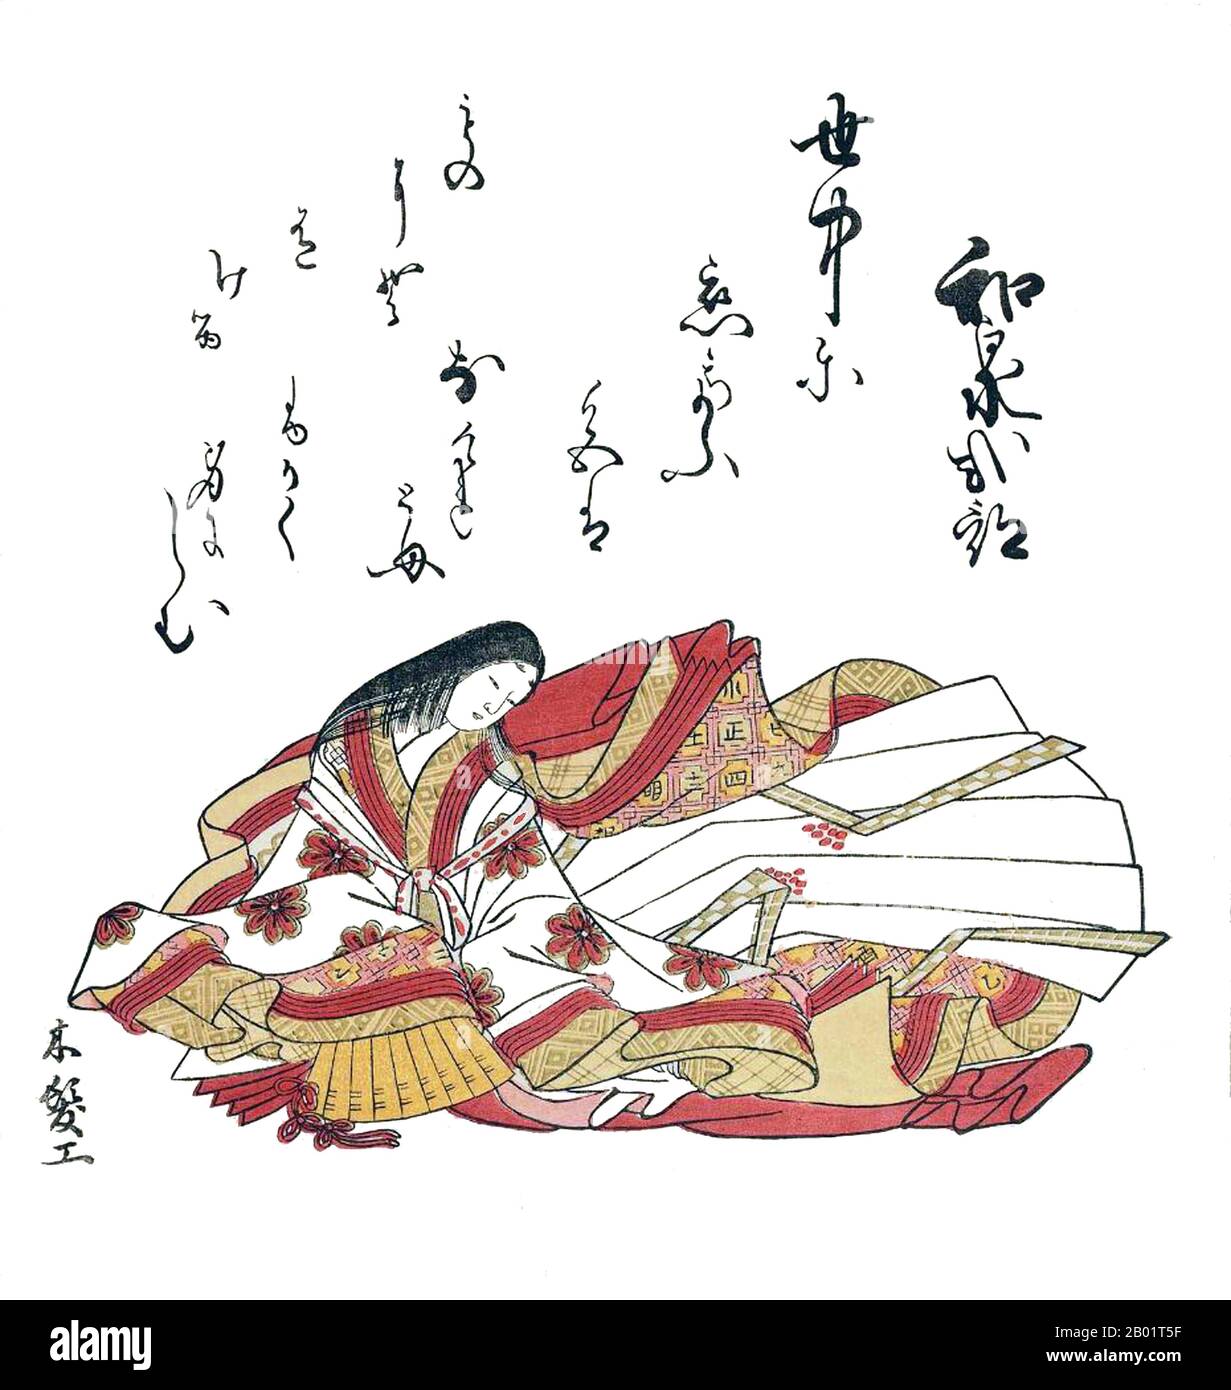 Japan: Lady Izumi Shikibu (ca. 973–1025), Dichterin und Schriftstellerin. Ukiyo-e Holzblock-Druck von Komatsuken Kiyomitsu (18. Jahrhundert), 1765. Izumi Shikibu (976) war ein japanischer Dichter in der Mitte der Heian-Zeit. Sie ist Mitglied der sechsunddreißig mittelalterlichen Poesie Unsterblichen (chūko sanjurokkasen). Sie war die Zeitgenossen von Murasaki Shikibu und Akazome Emon am Hof von Joto Mon'in. Sie wird von vielen als die größte Dichterin der Heian-Zeit angesehen. Ihr Vermächtnis umfasst 242 Gedichte und zwei Kaschu. Stockfoto